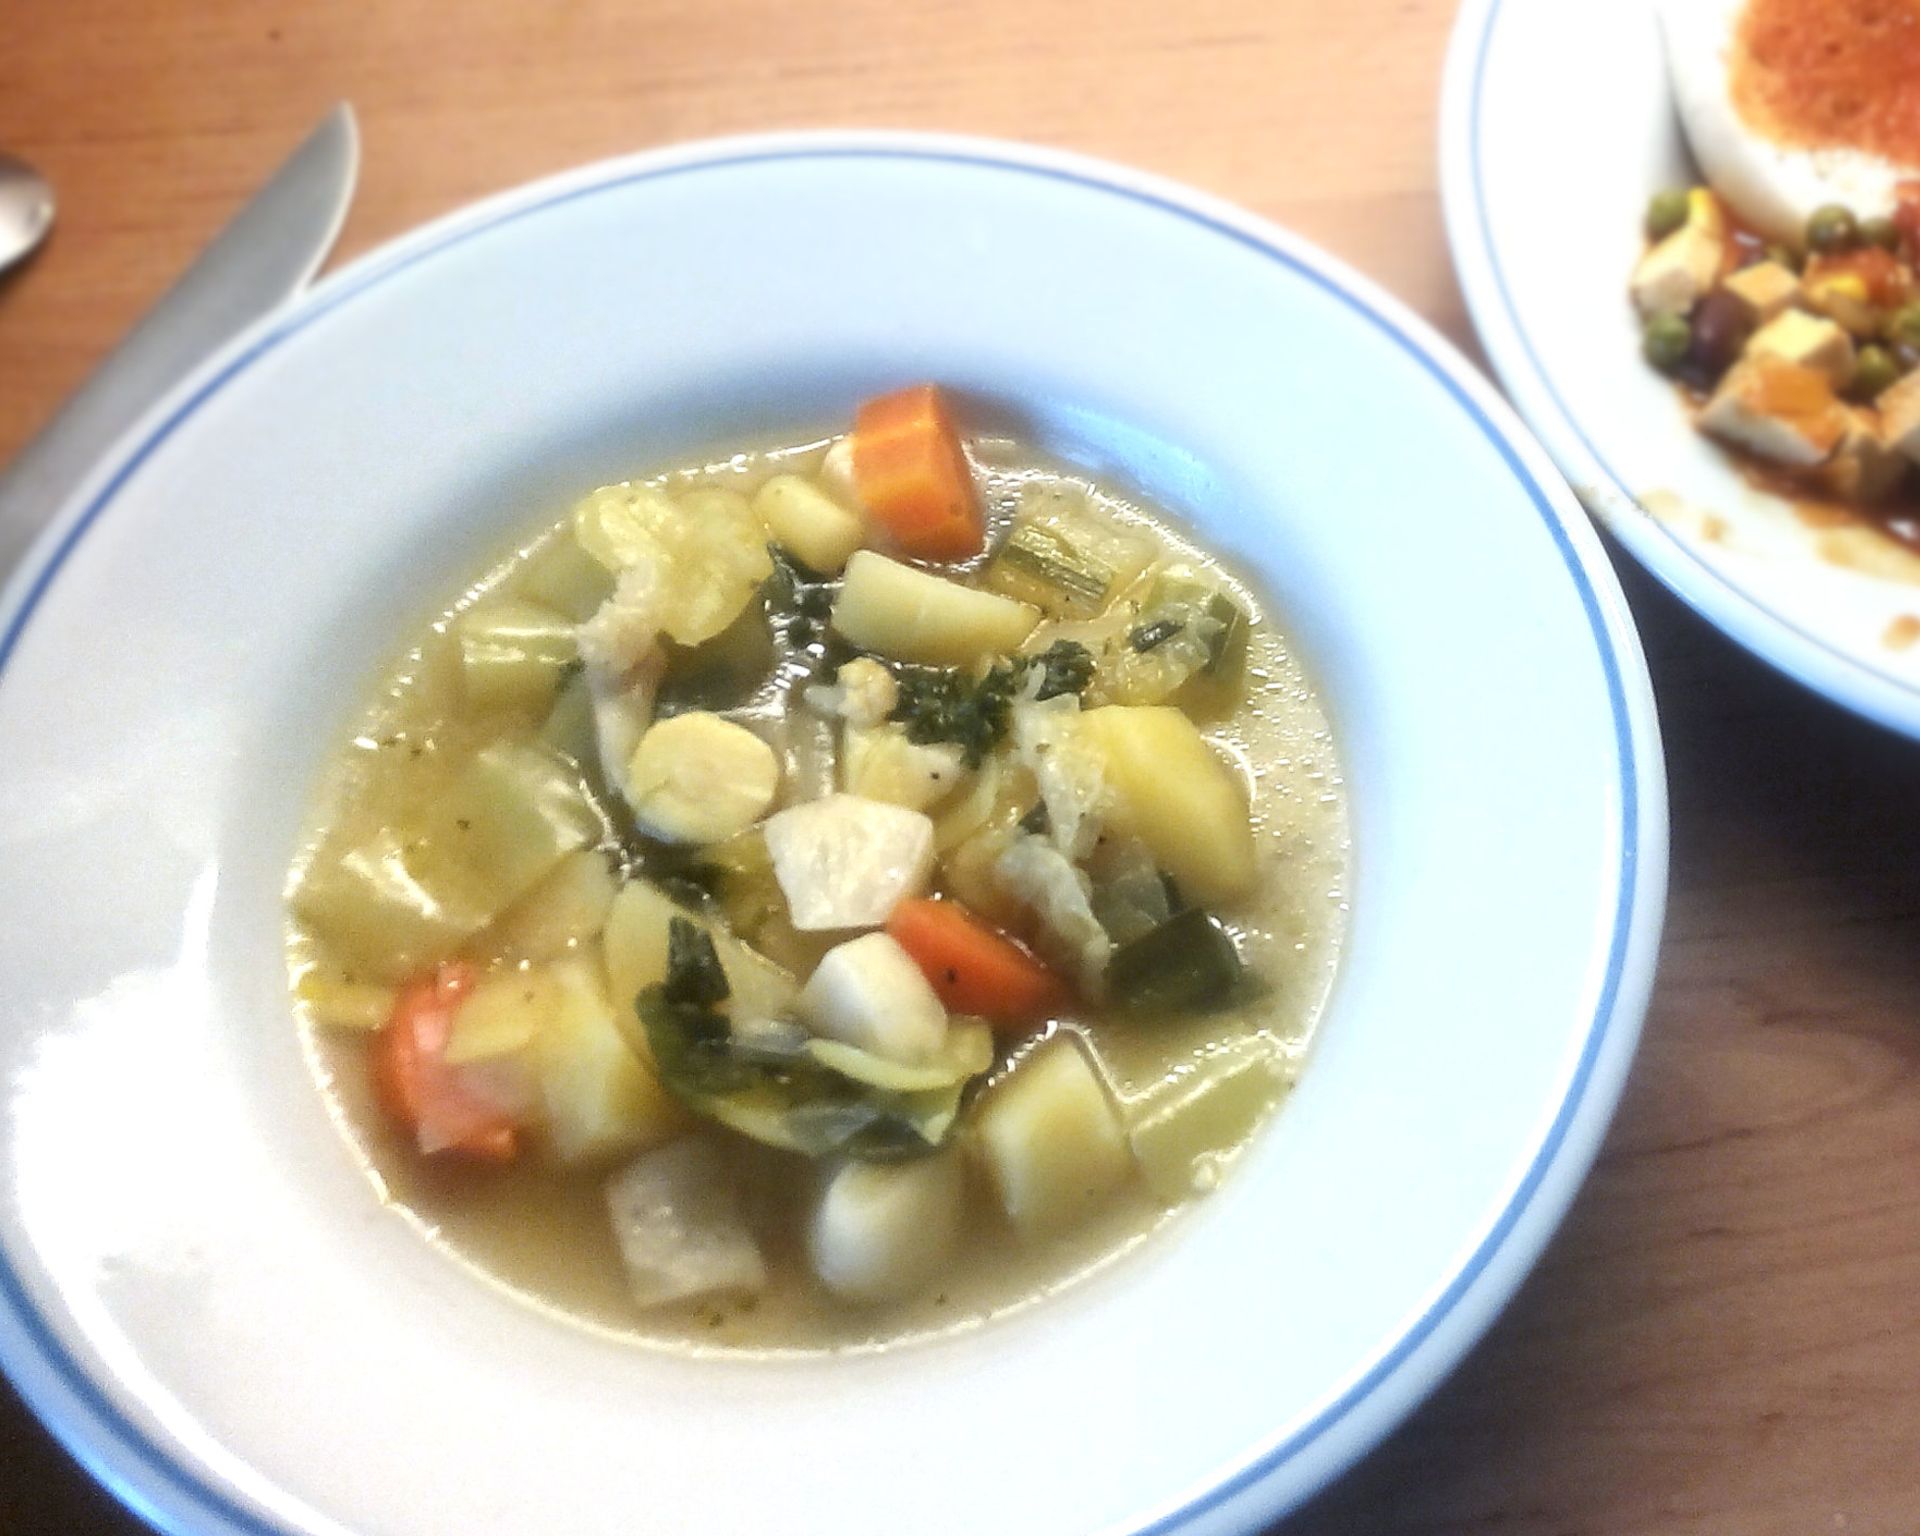 Typická slovenská polievka zo zemiakov, mrkvy, papriky, zeleru, póru a cesnaku v jednej porcii na tanieri.